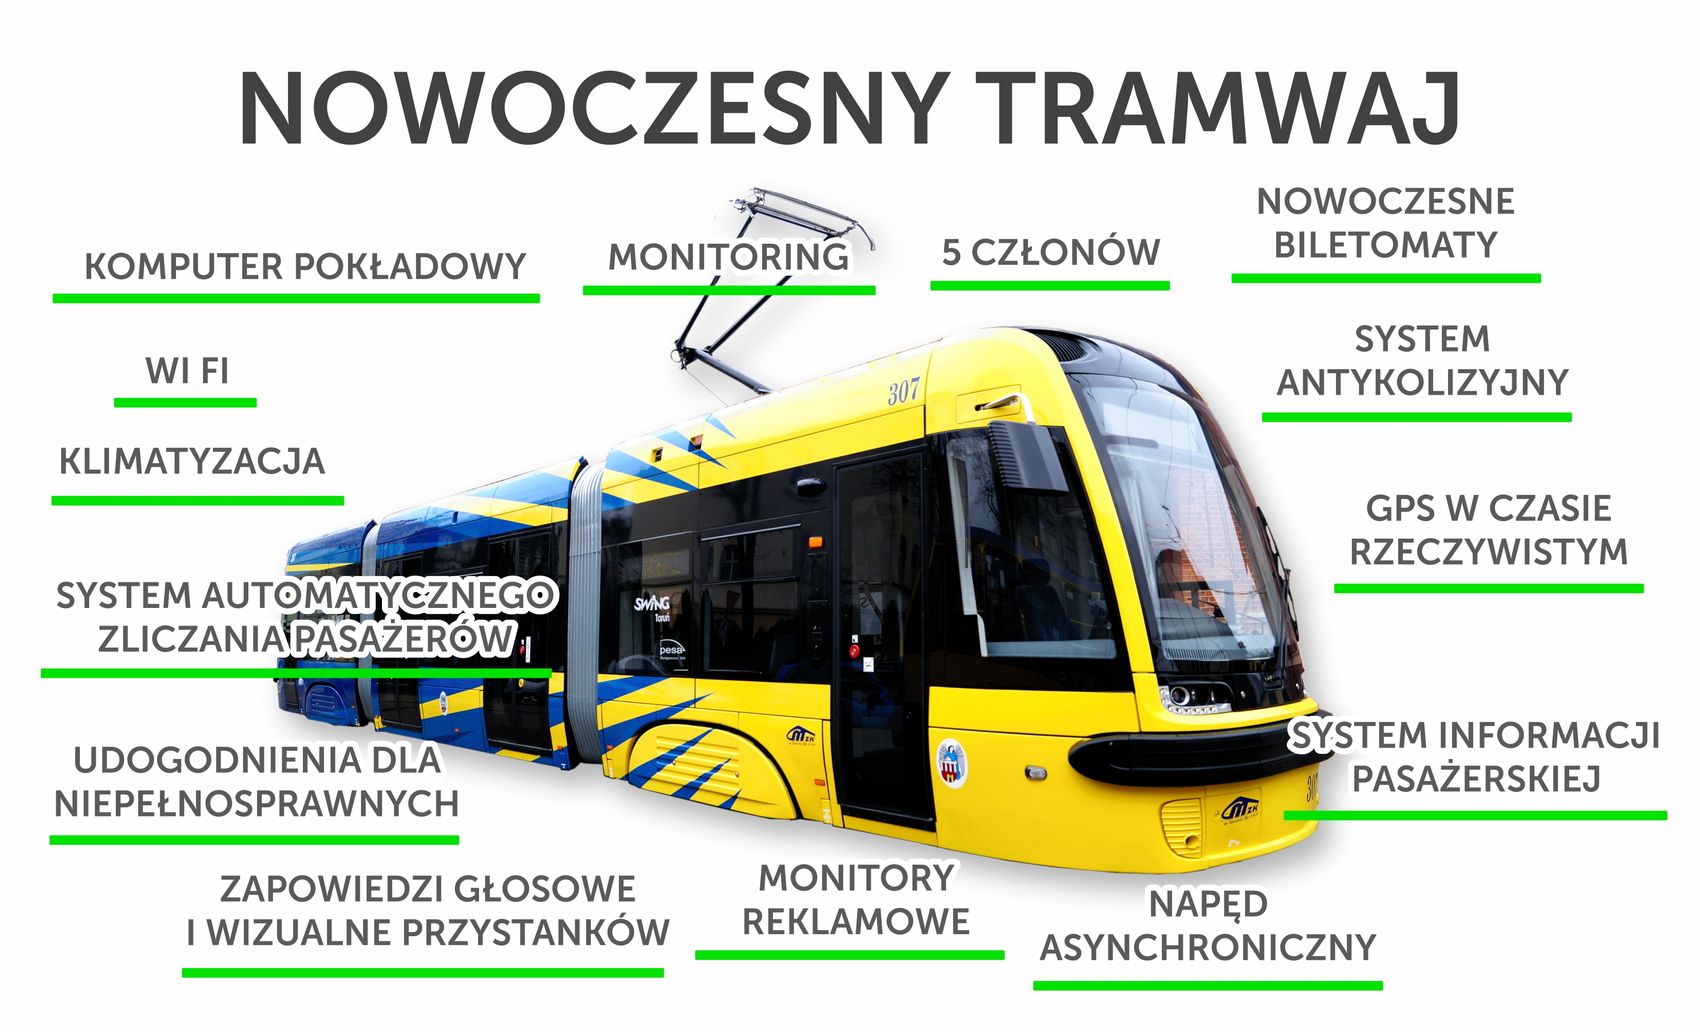 Nowoczesny tramwaj